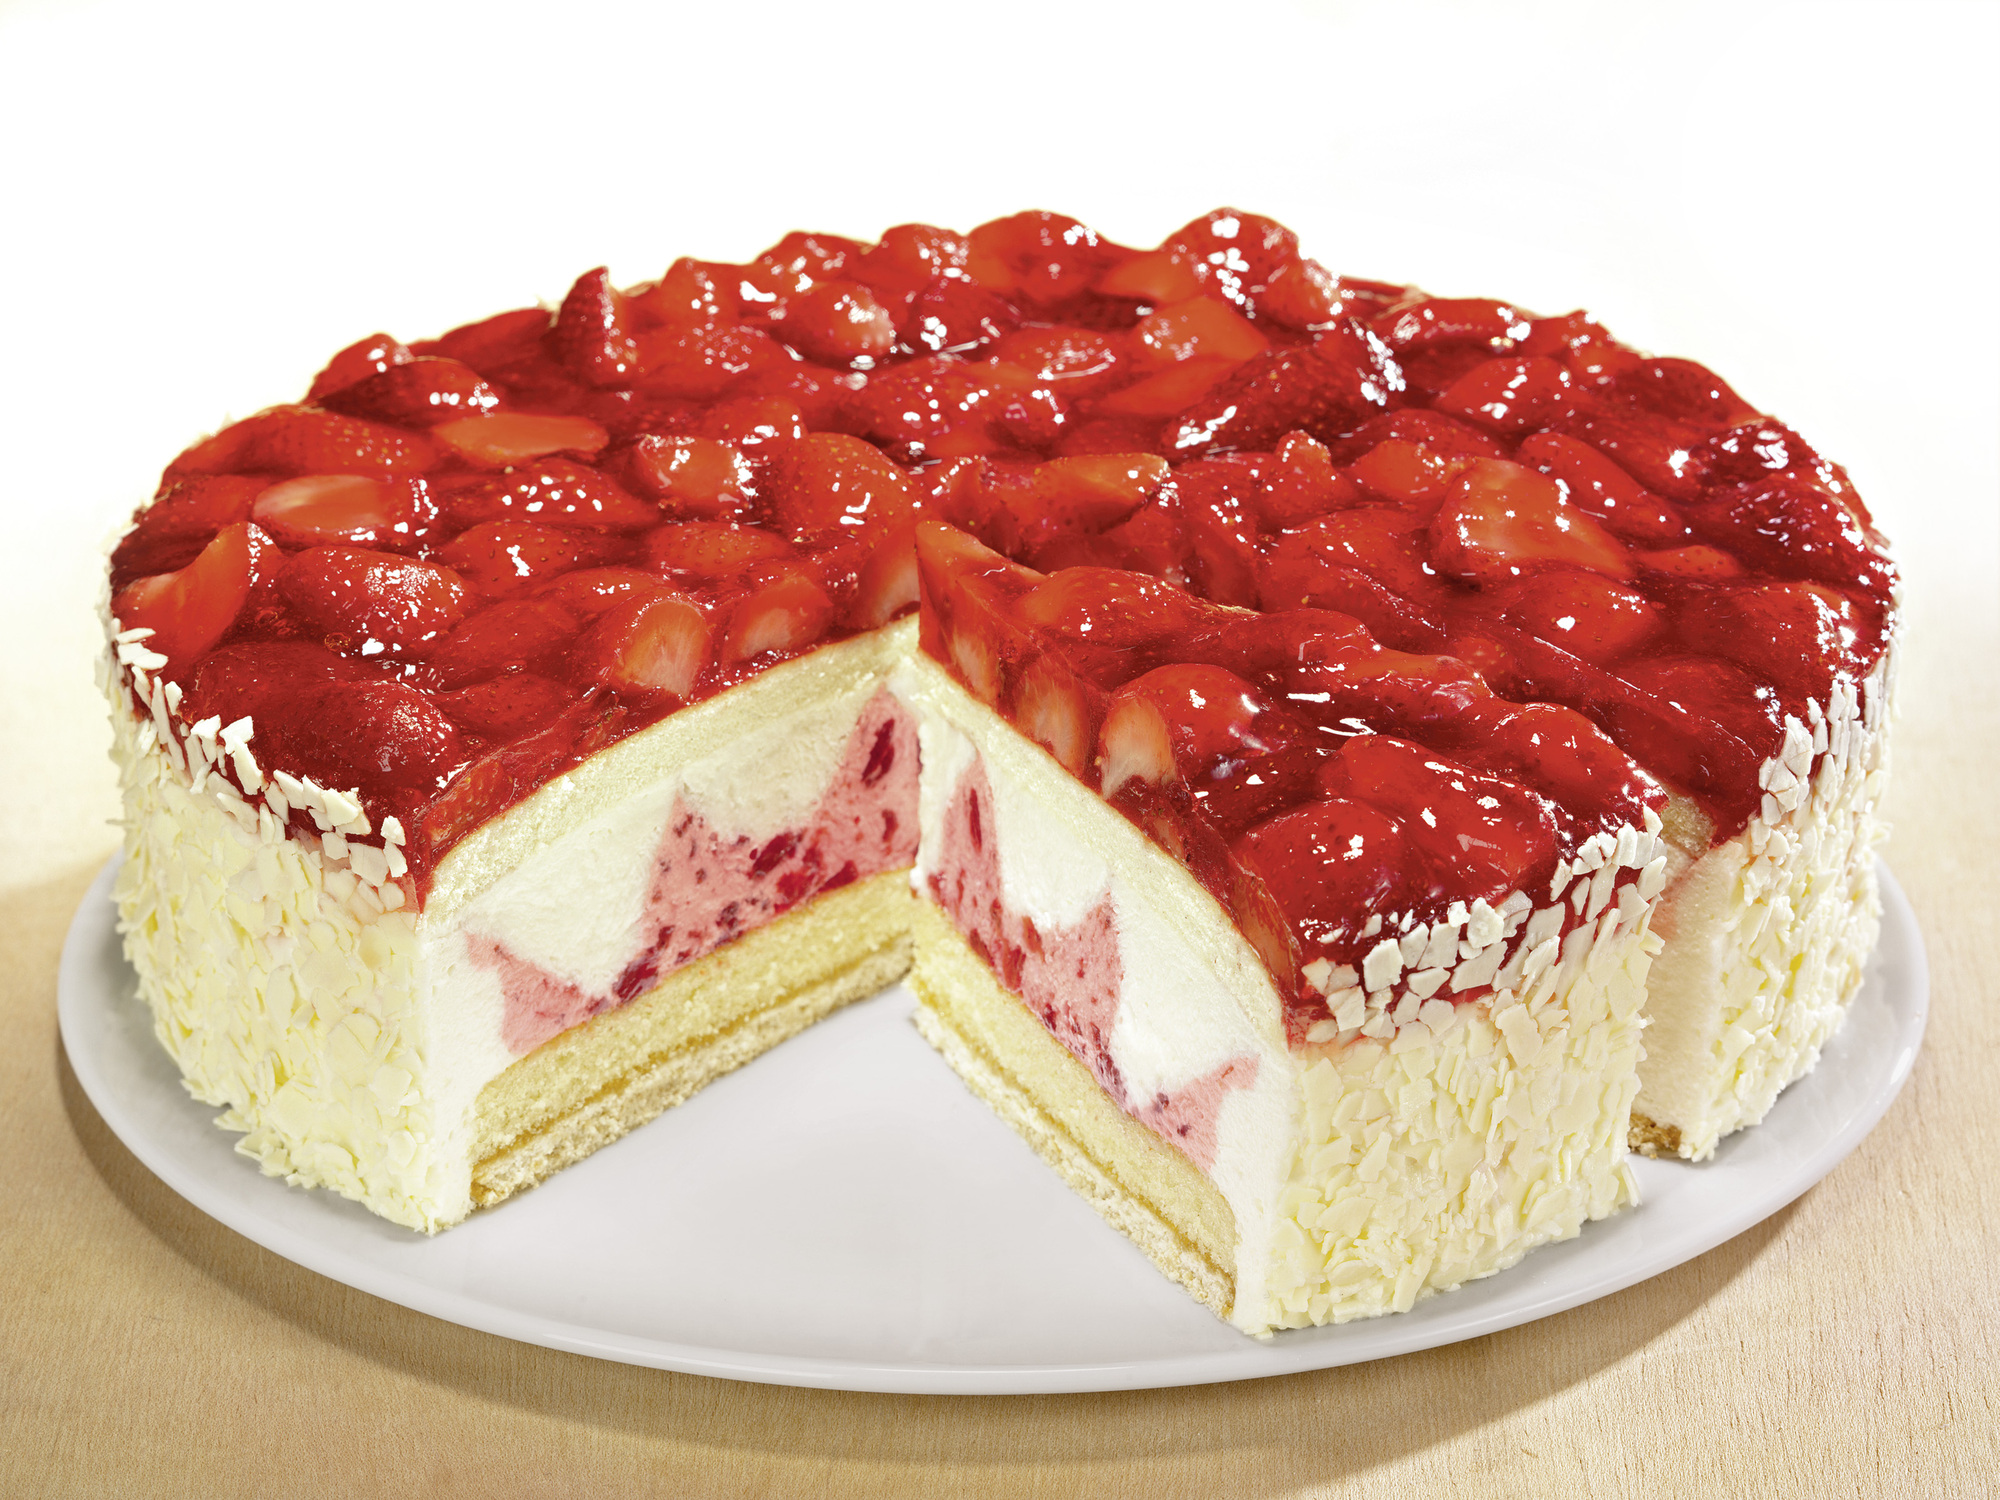 Erdbeer-Buttermilch-Torte 2900g